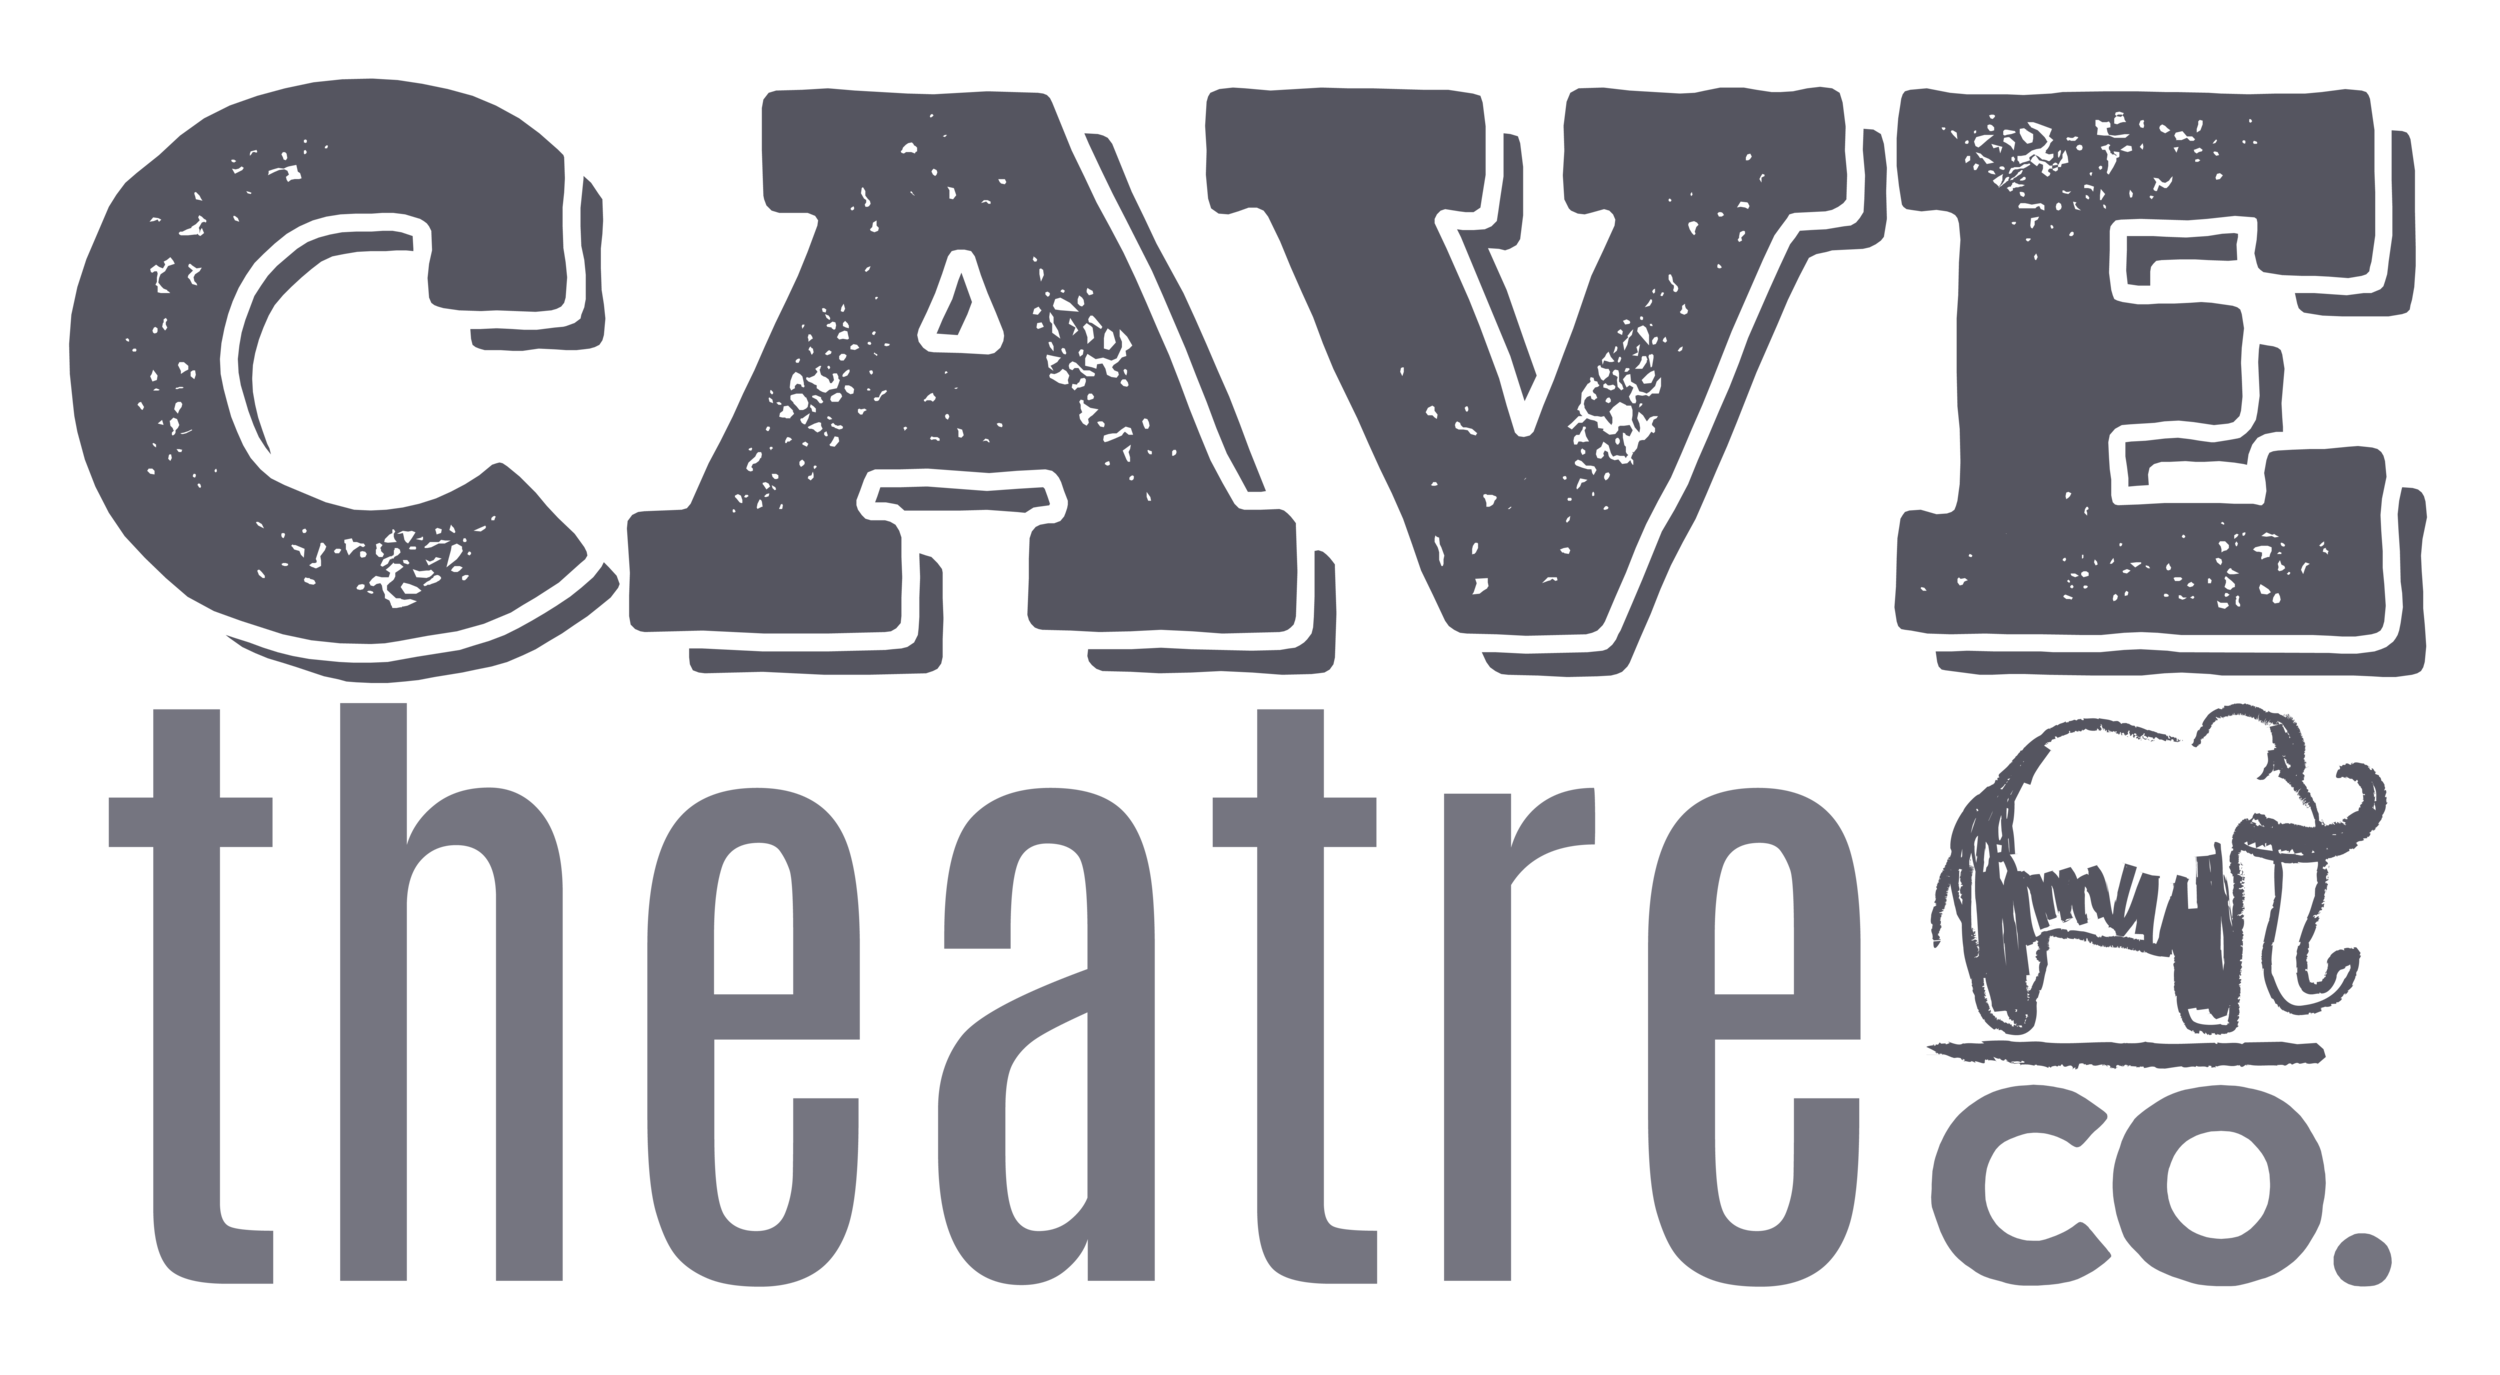 Cave Theatre Co.